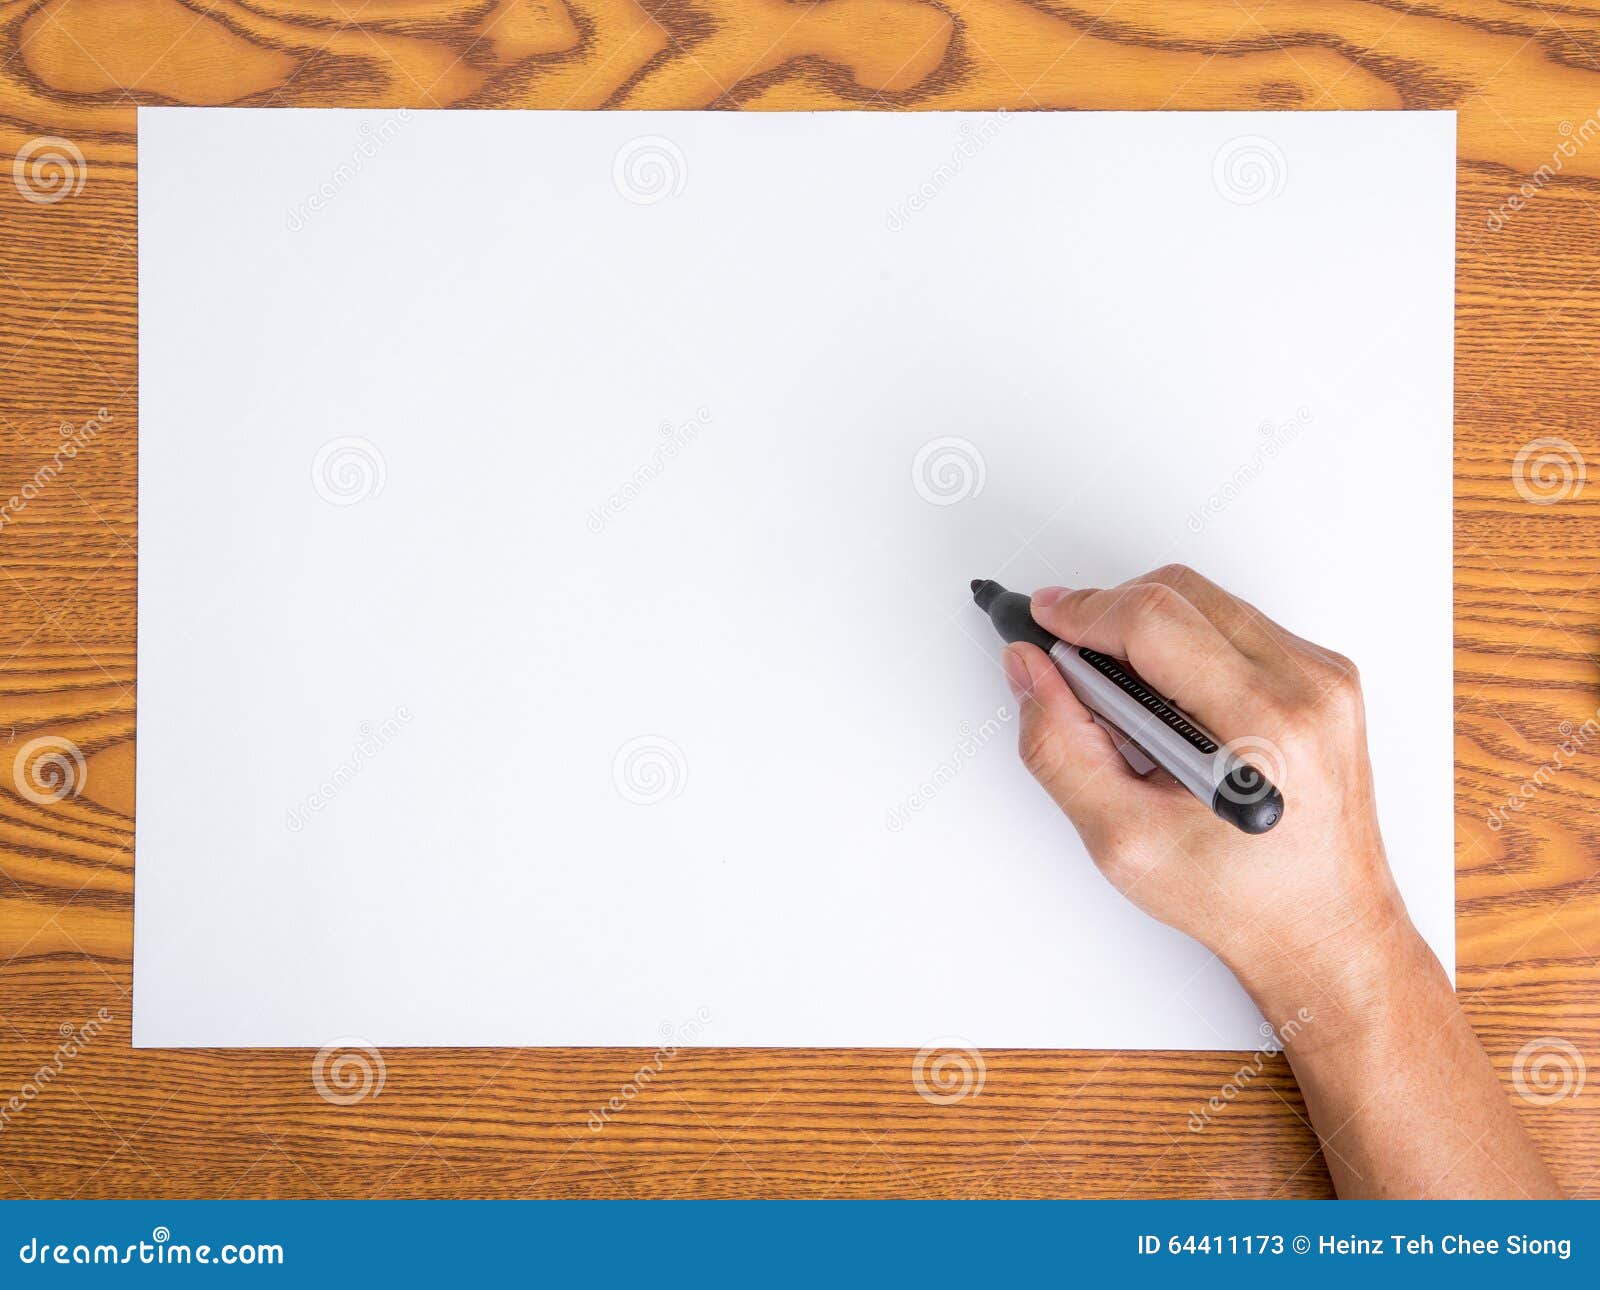 how to write a white paper amazon